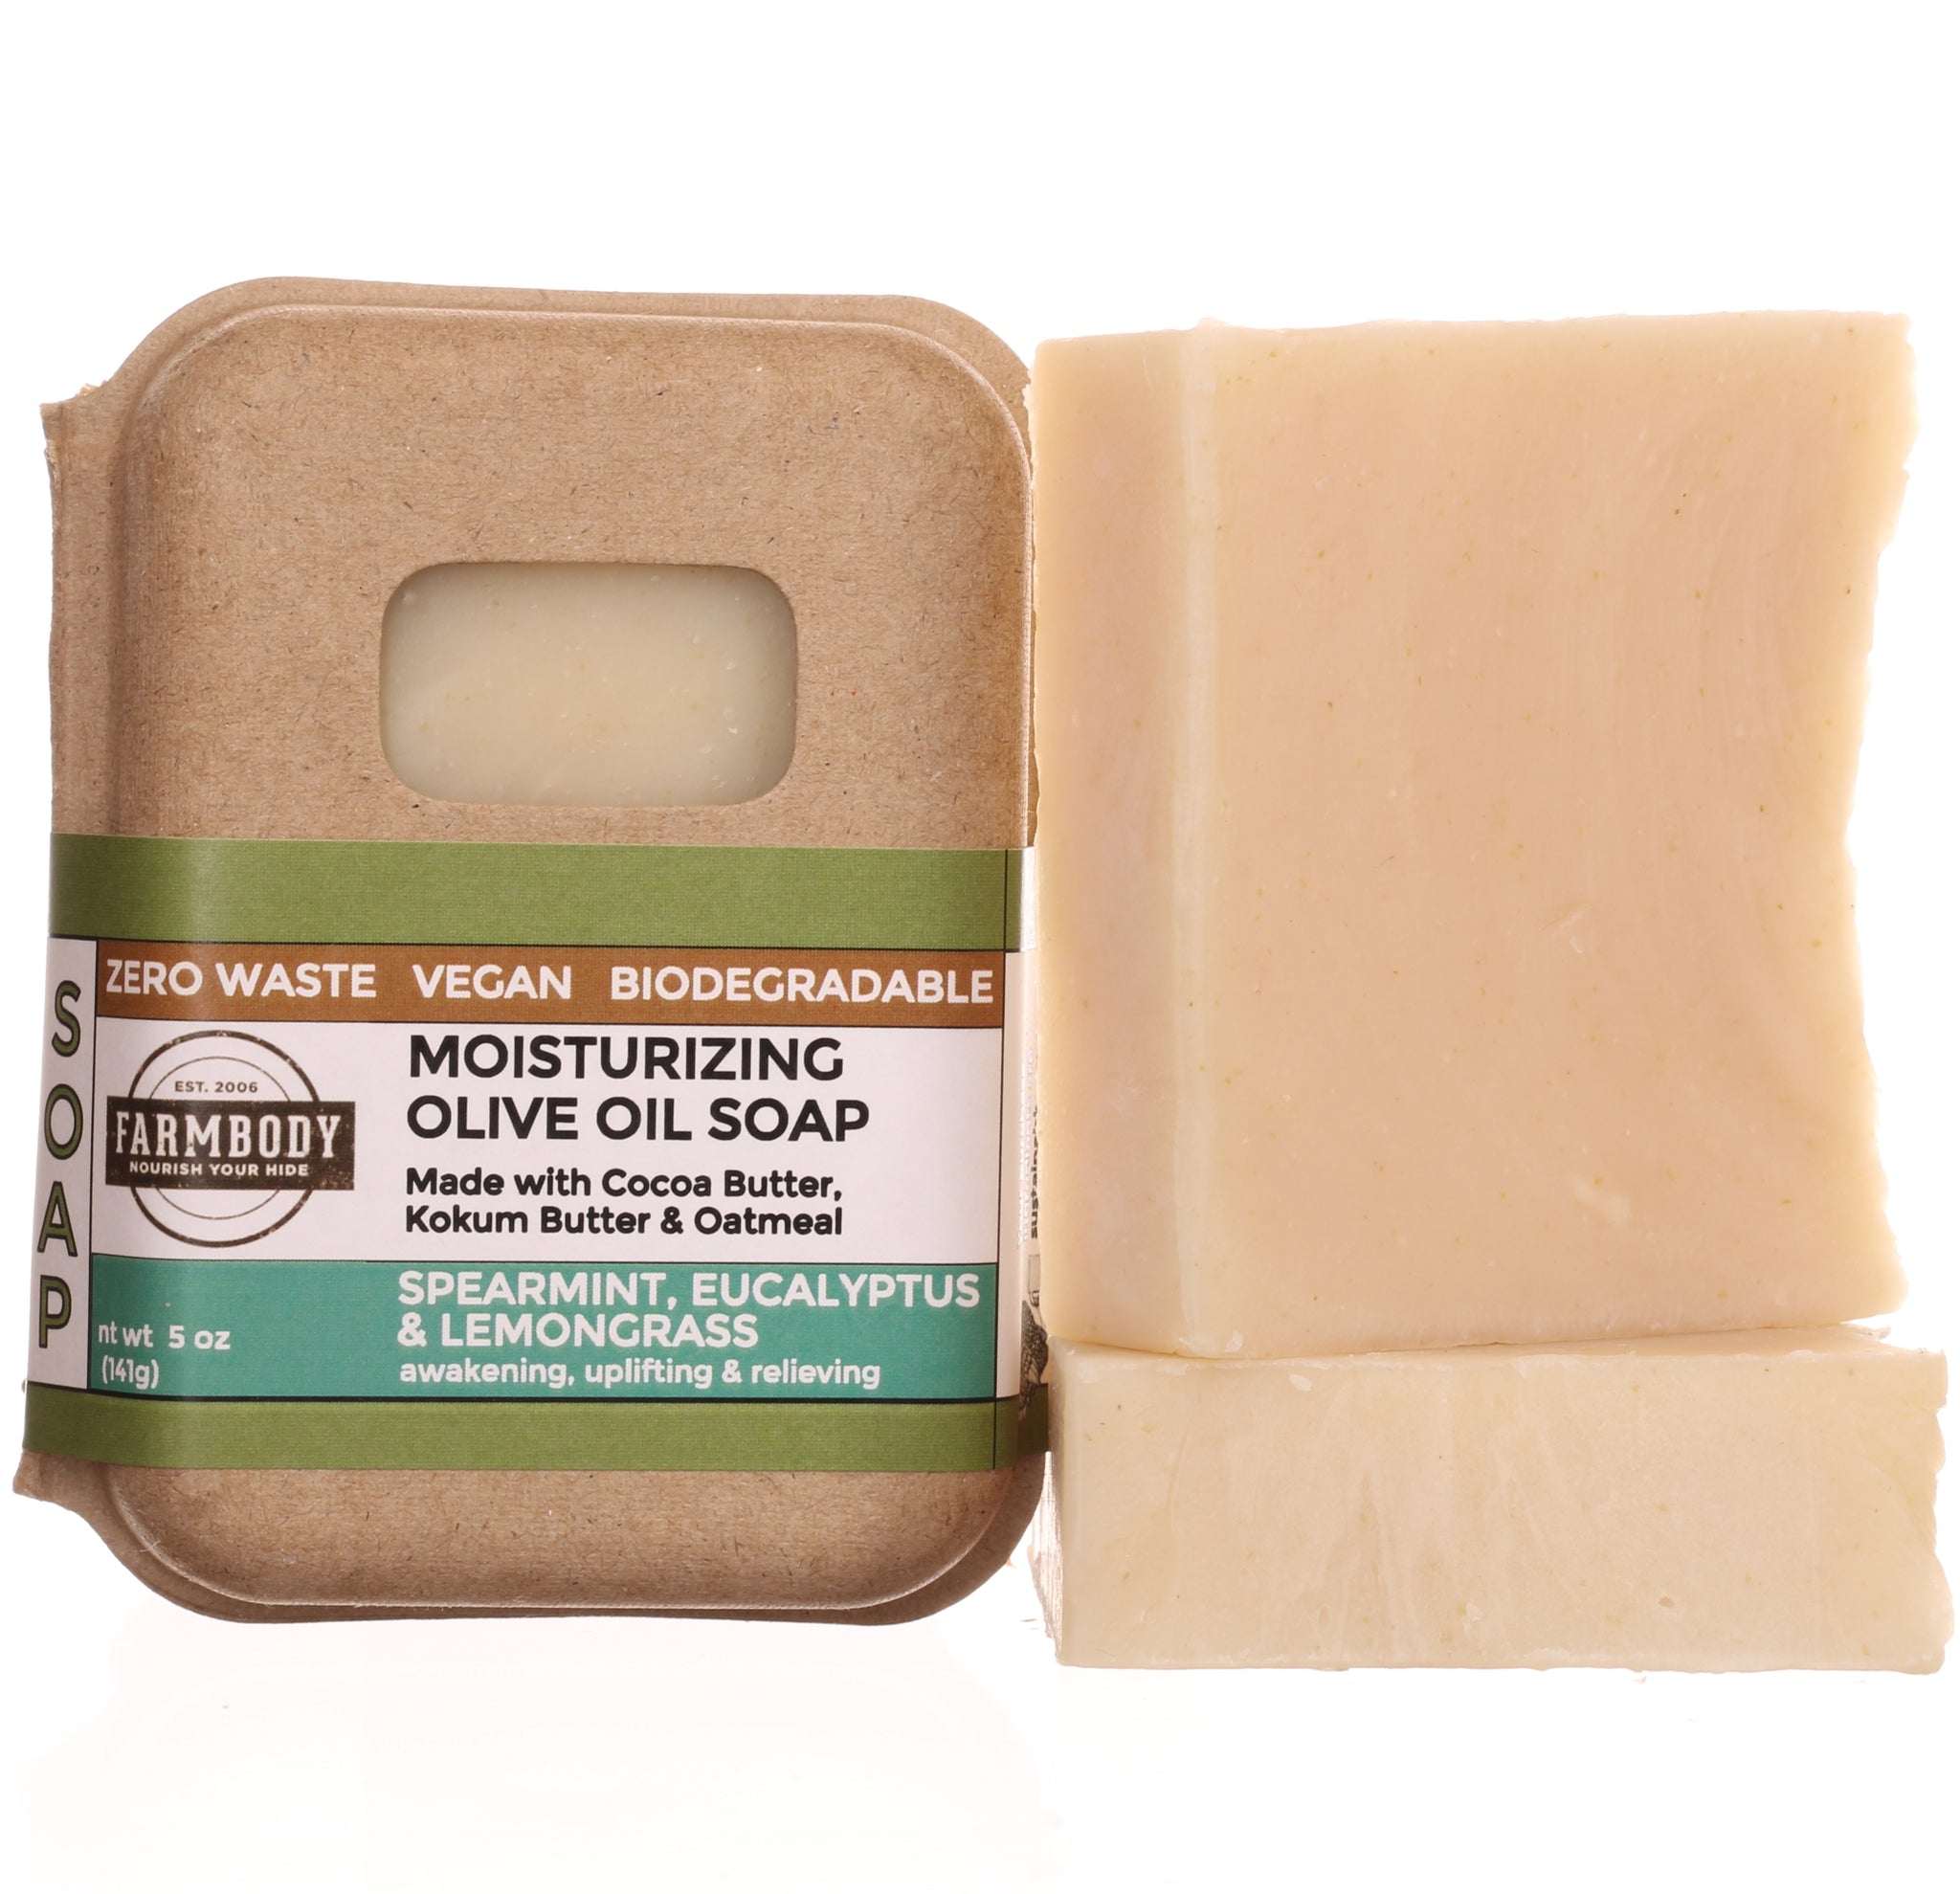 Moisturizing Vegan Olive Oil Soap Benefits for Dry Skin | Spearmint, Eucalyptus & Lemongrass - Farmbody